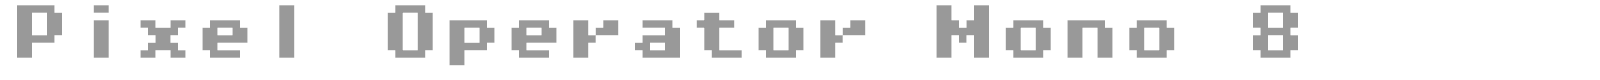 Pixel Operator Mono 8 font preview